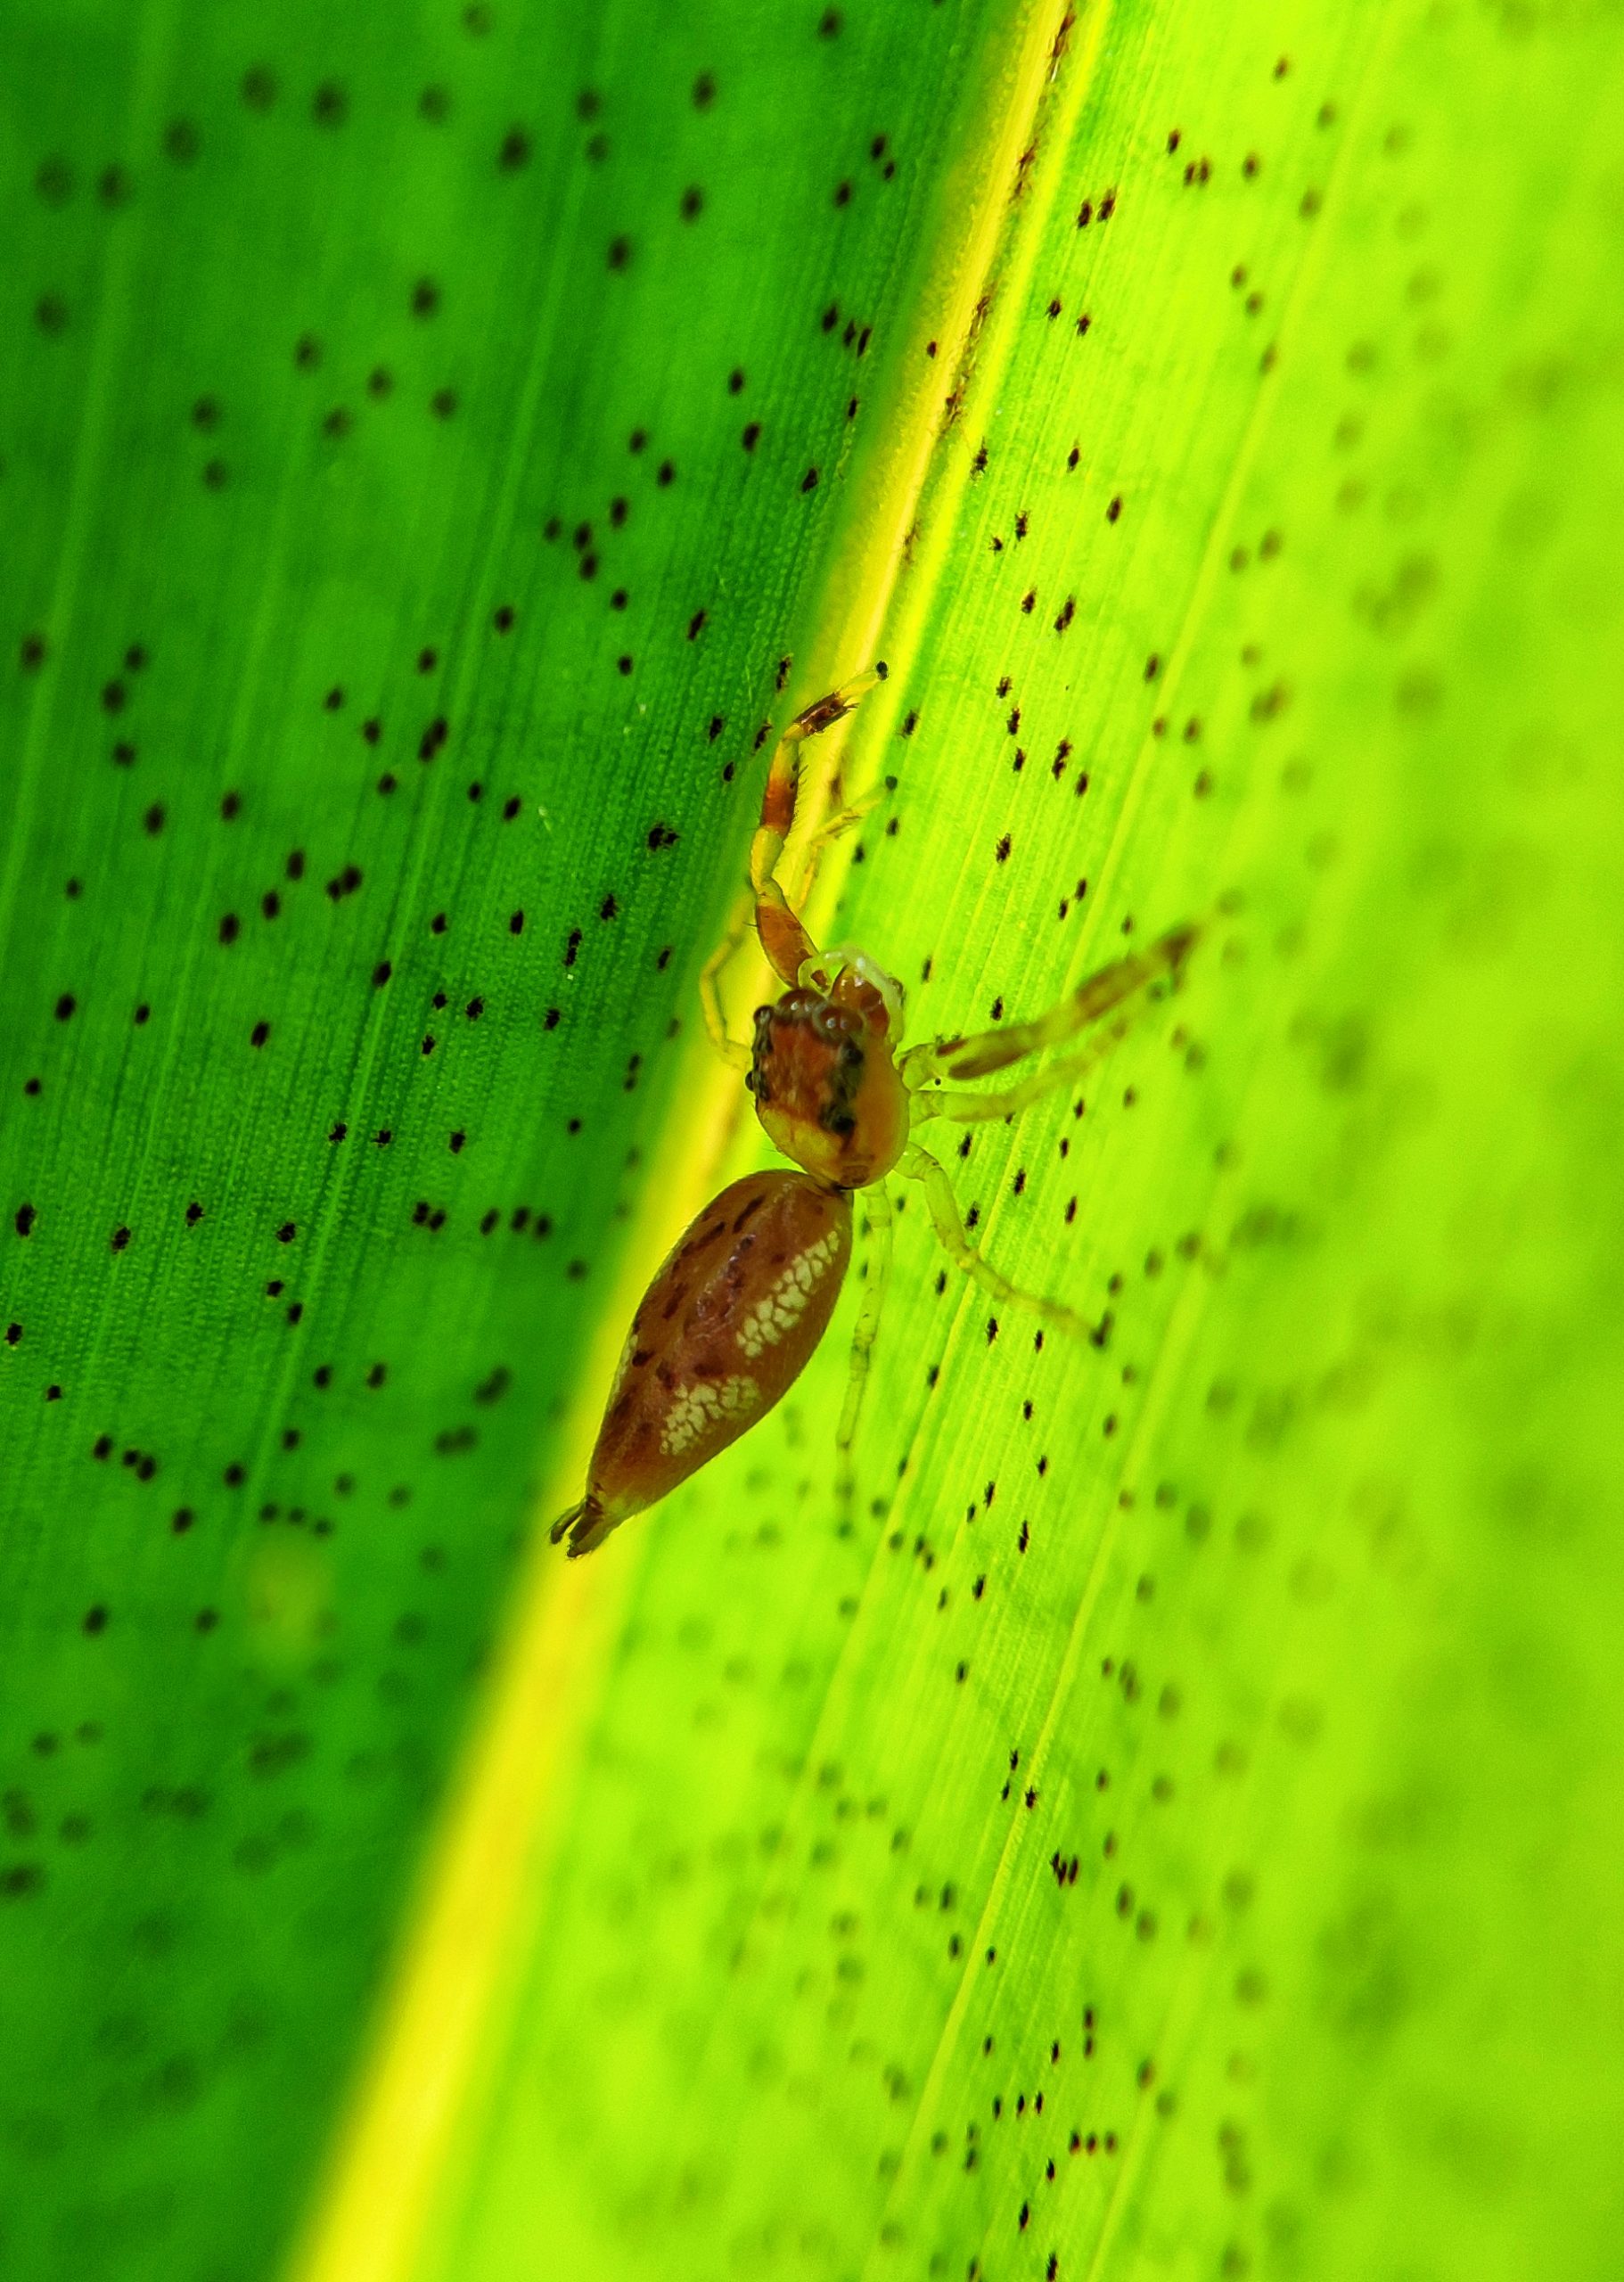 Spider on plant leaf